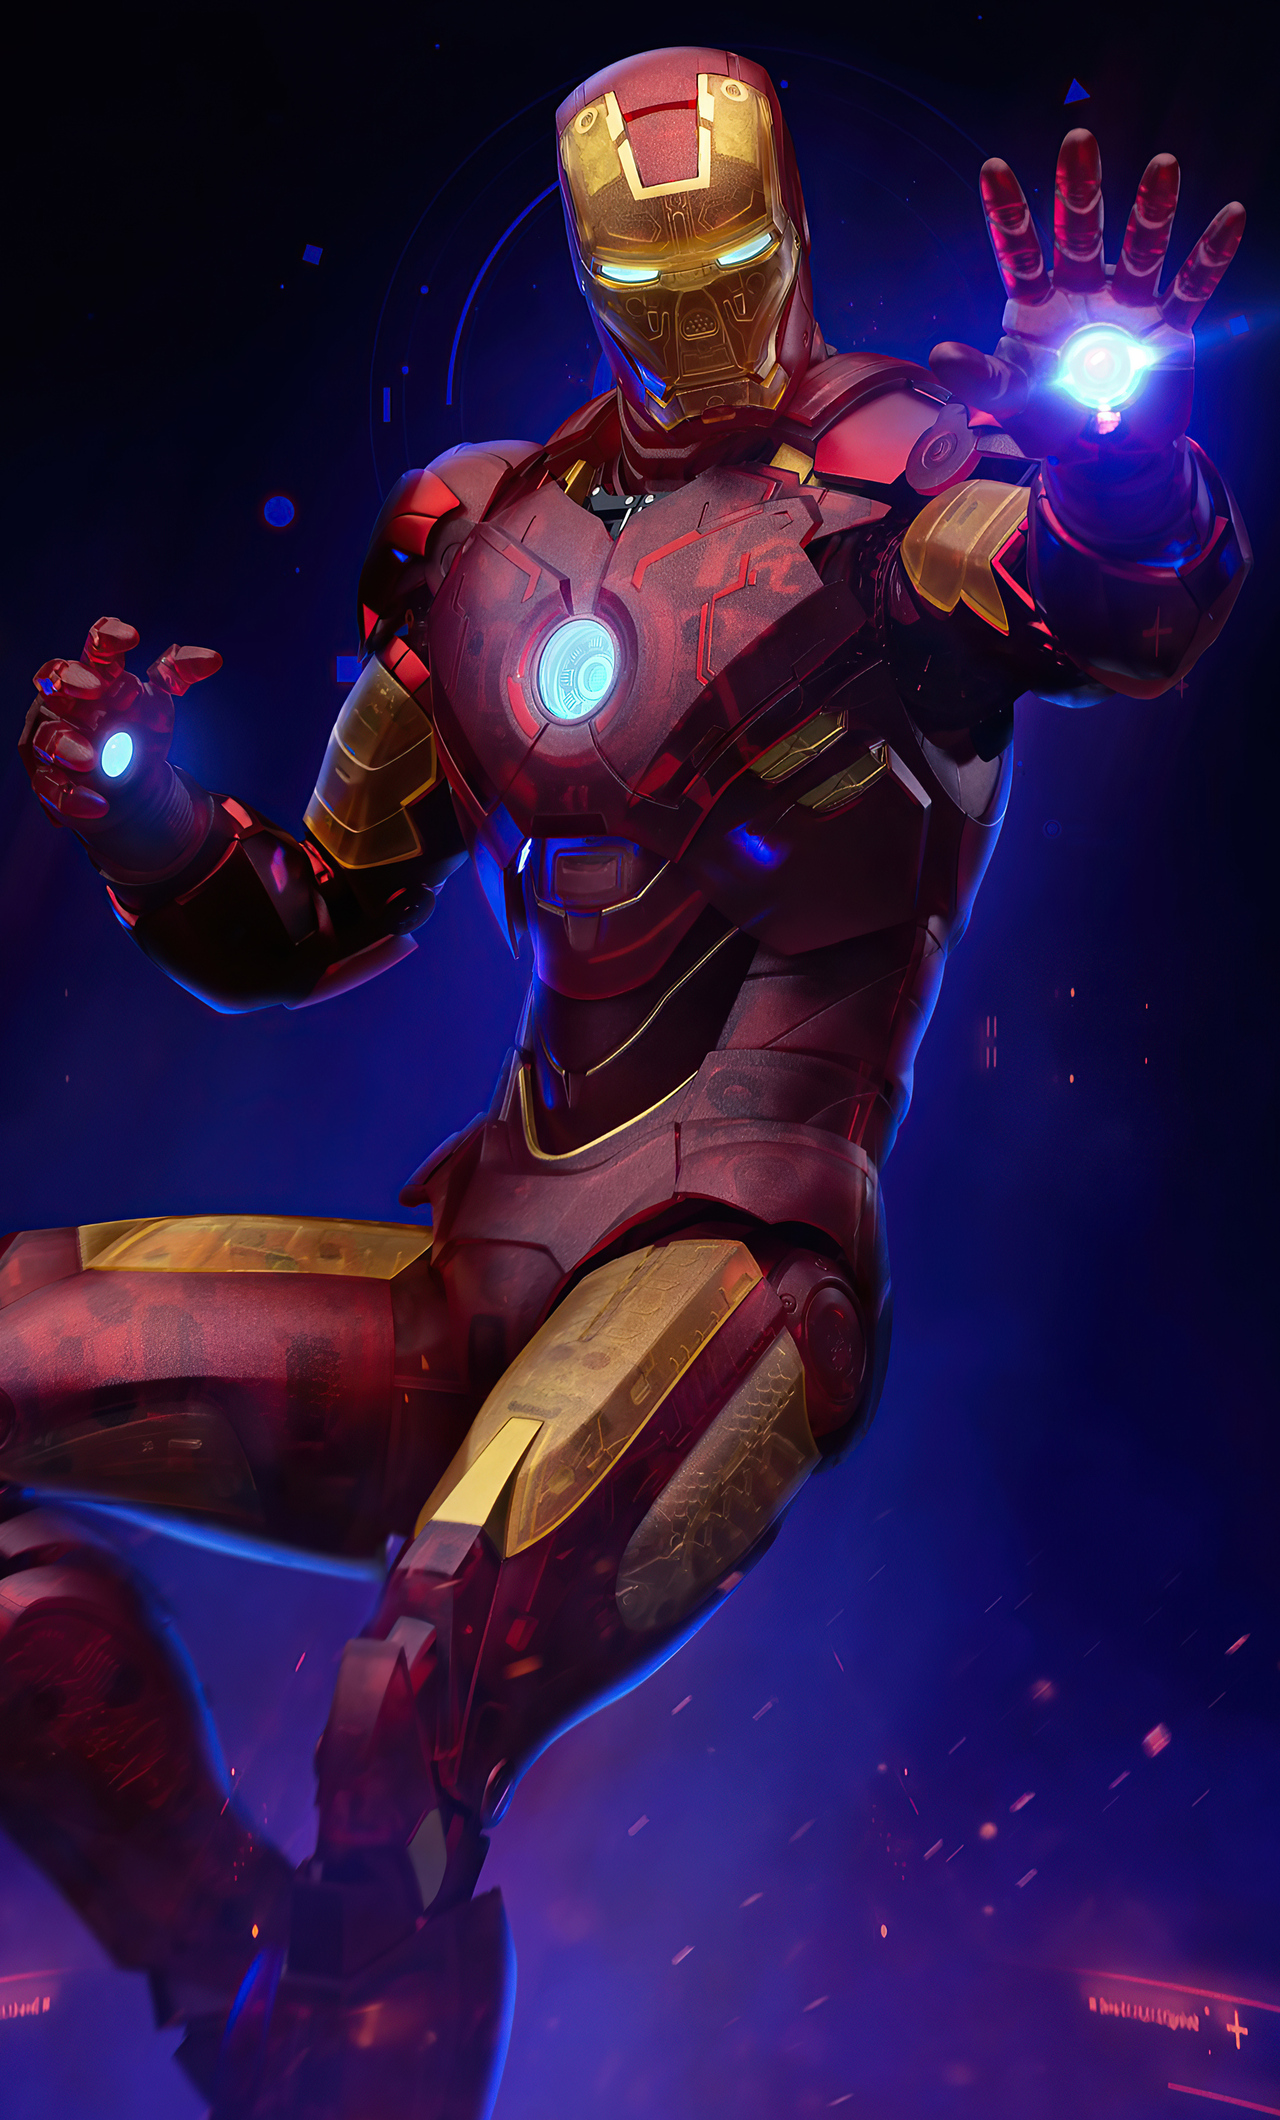 Đừng bỏ lỡ cơ hội chiêm ngưỡng Iron Man Holographic đầy ấn tượng trong hình ảnh đặc biệt này. Bạn sẽ không thể rời mắt khỏi chiếc giáp siêu nhân phản chiếu ánh sáng huyền ảo đến từ chiếc bàn tay của Tony Stark.